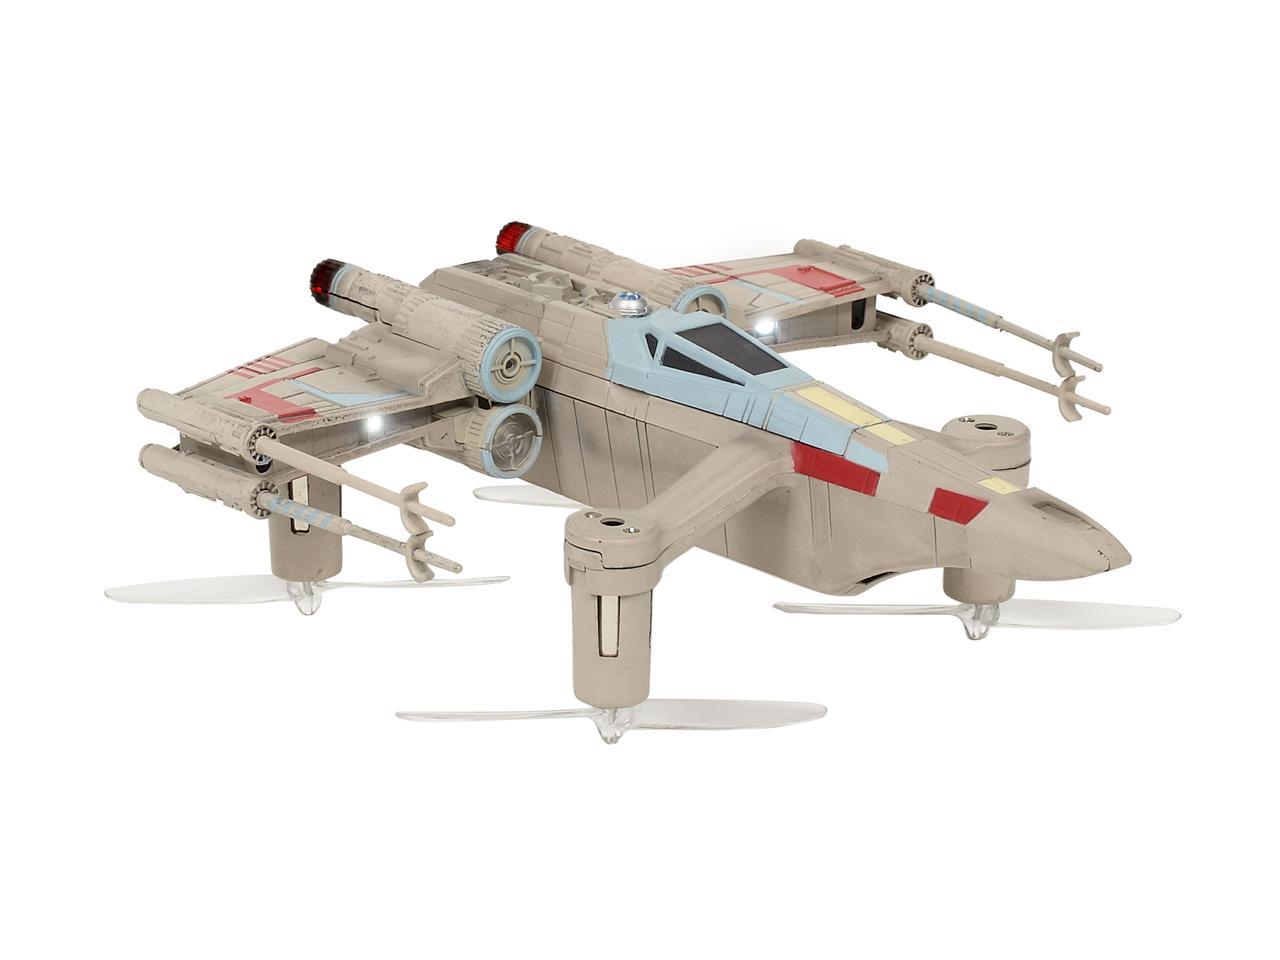 StarWars X-Wing Starfighter Fernbedienung Toy Classic Edition Kylo ren 2.4ghz 